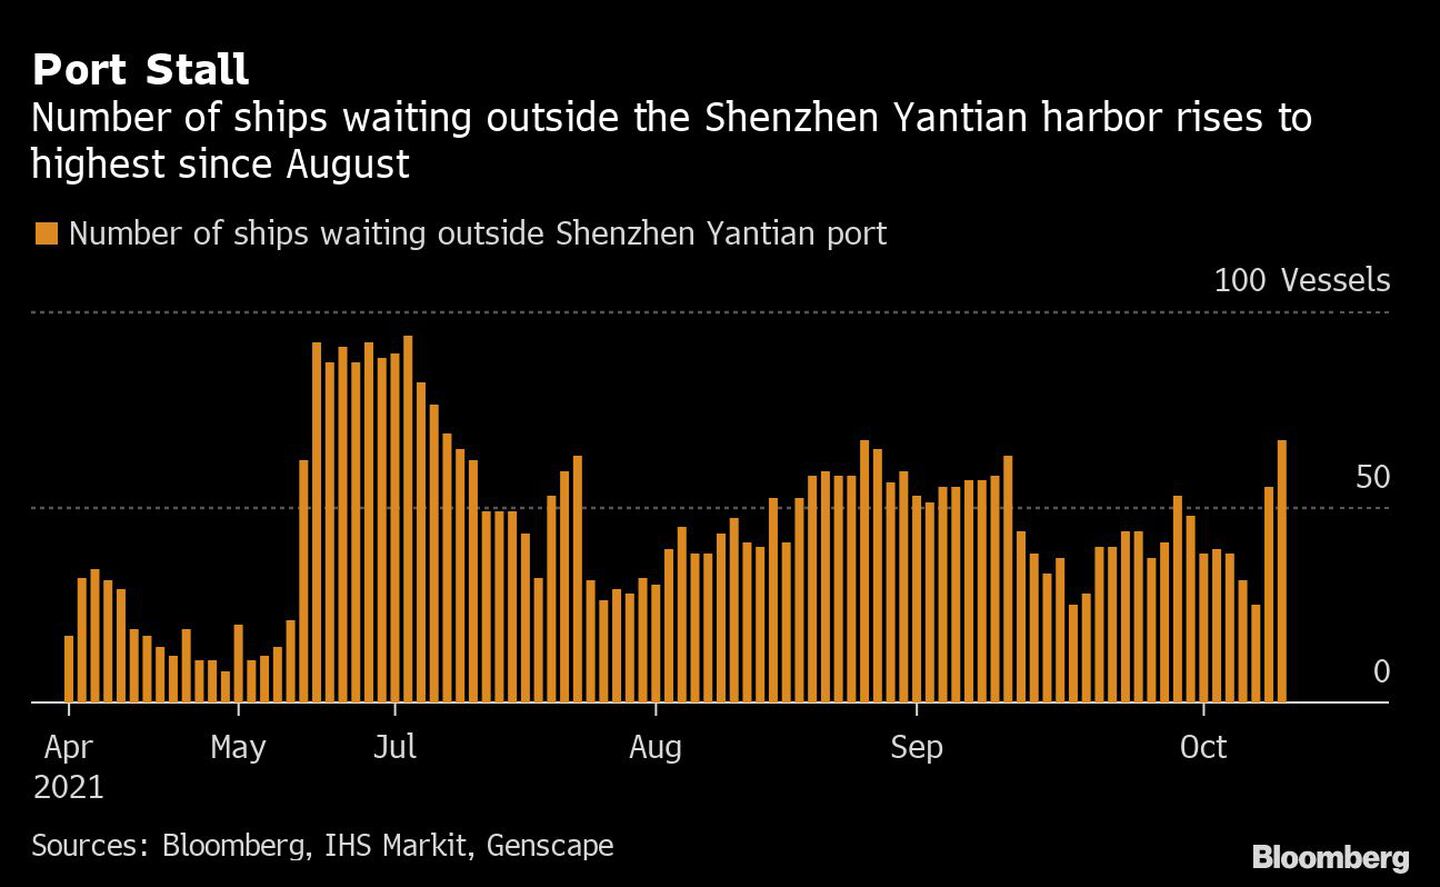 El número de barcos que esperan fuera del puerto de Shenzhen Yatiam aumenta hasta el máximo desde agosto.dfd